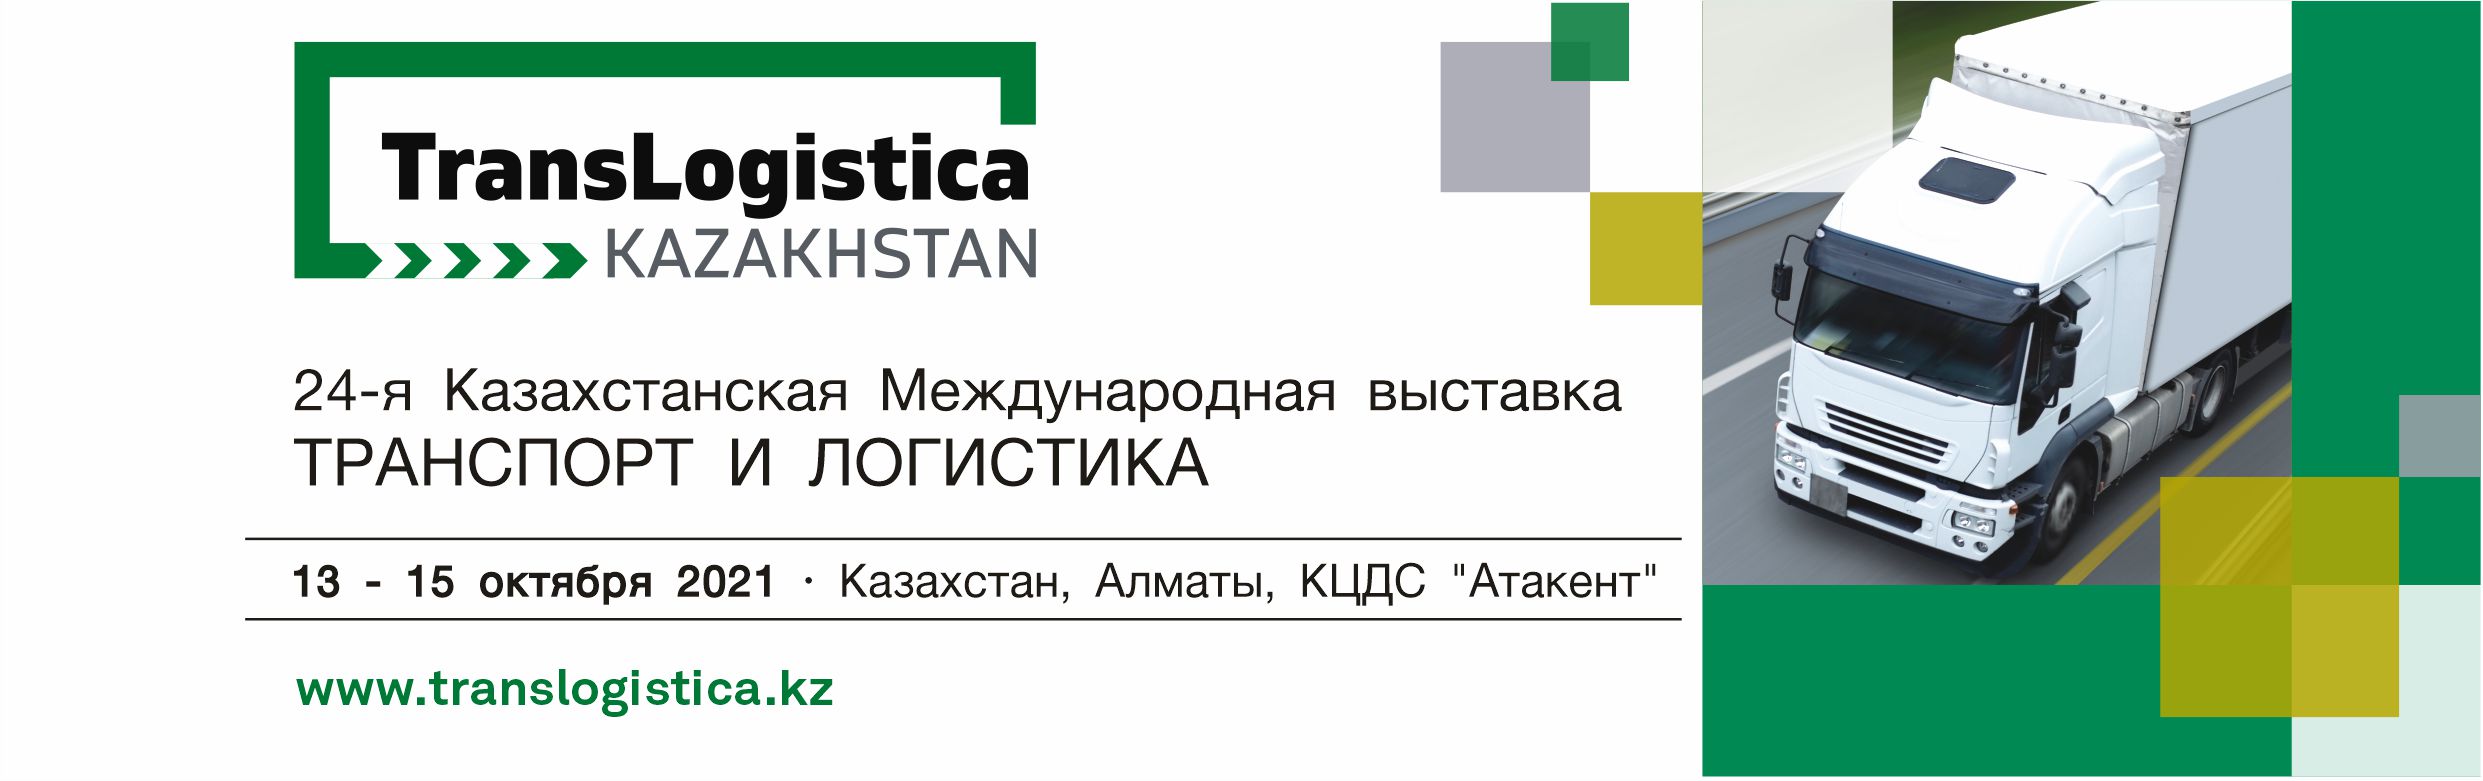 TransLogistica Kazakhstan 2021: Векторы развития транспортного сектора РК в новых реалиях